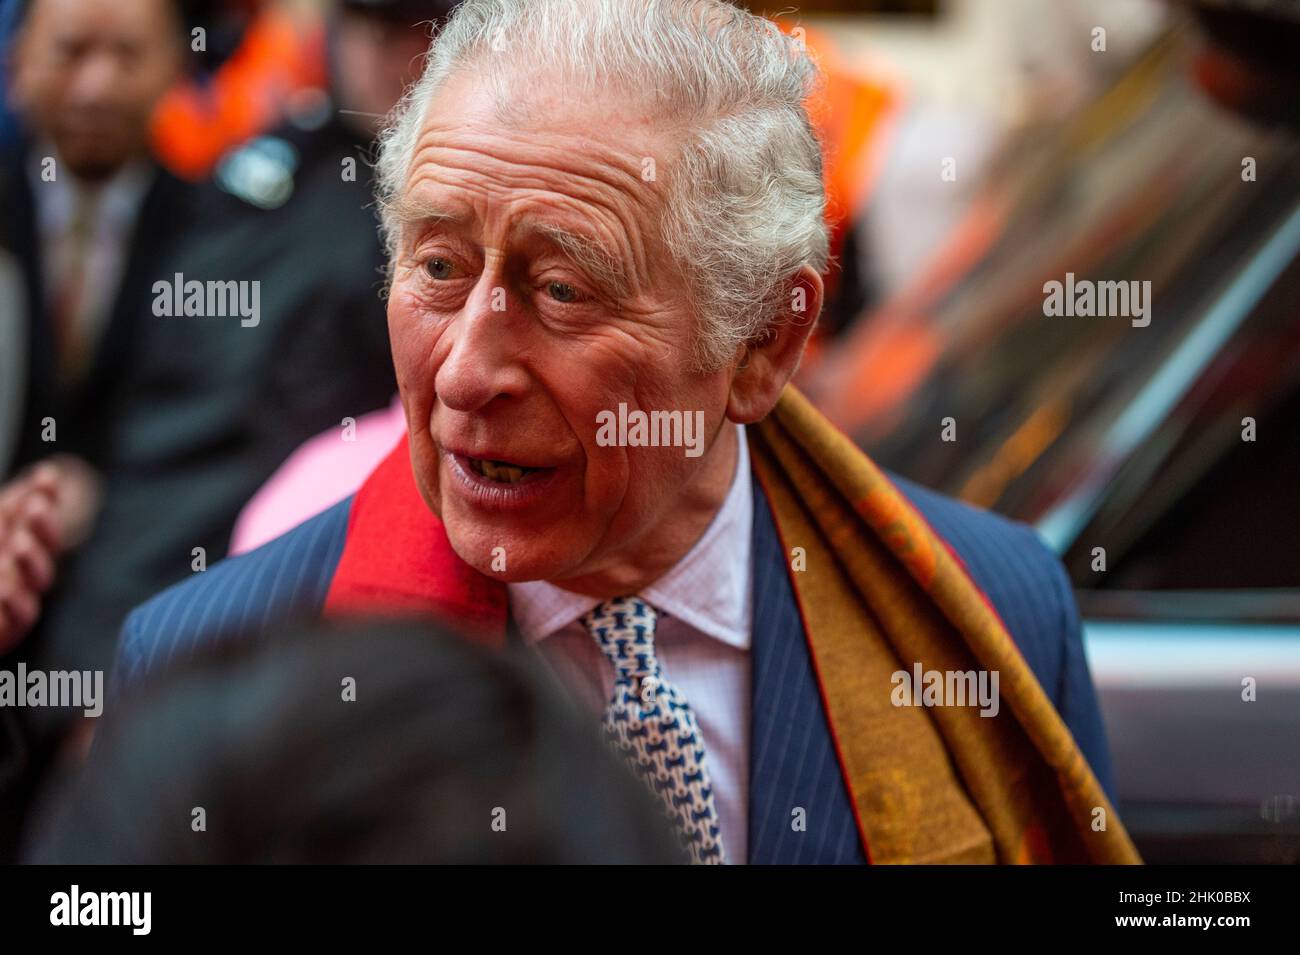 Londres, Royaume-Uni.1 février 2022.Le Prince de Galles rencontre des foules à Chinatown lors d'une visite pour célébrer le nouvel an lunaire, l'année du tigre.Credit: Stephen Chung / Alamy Live News Banque D'Images